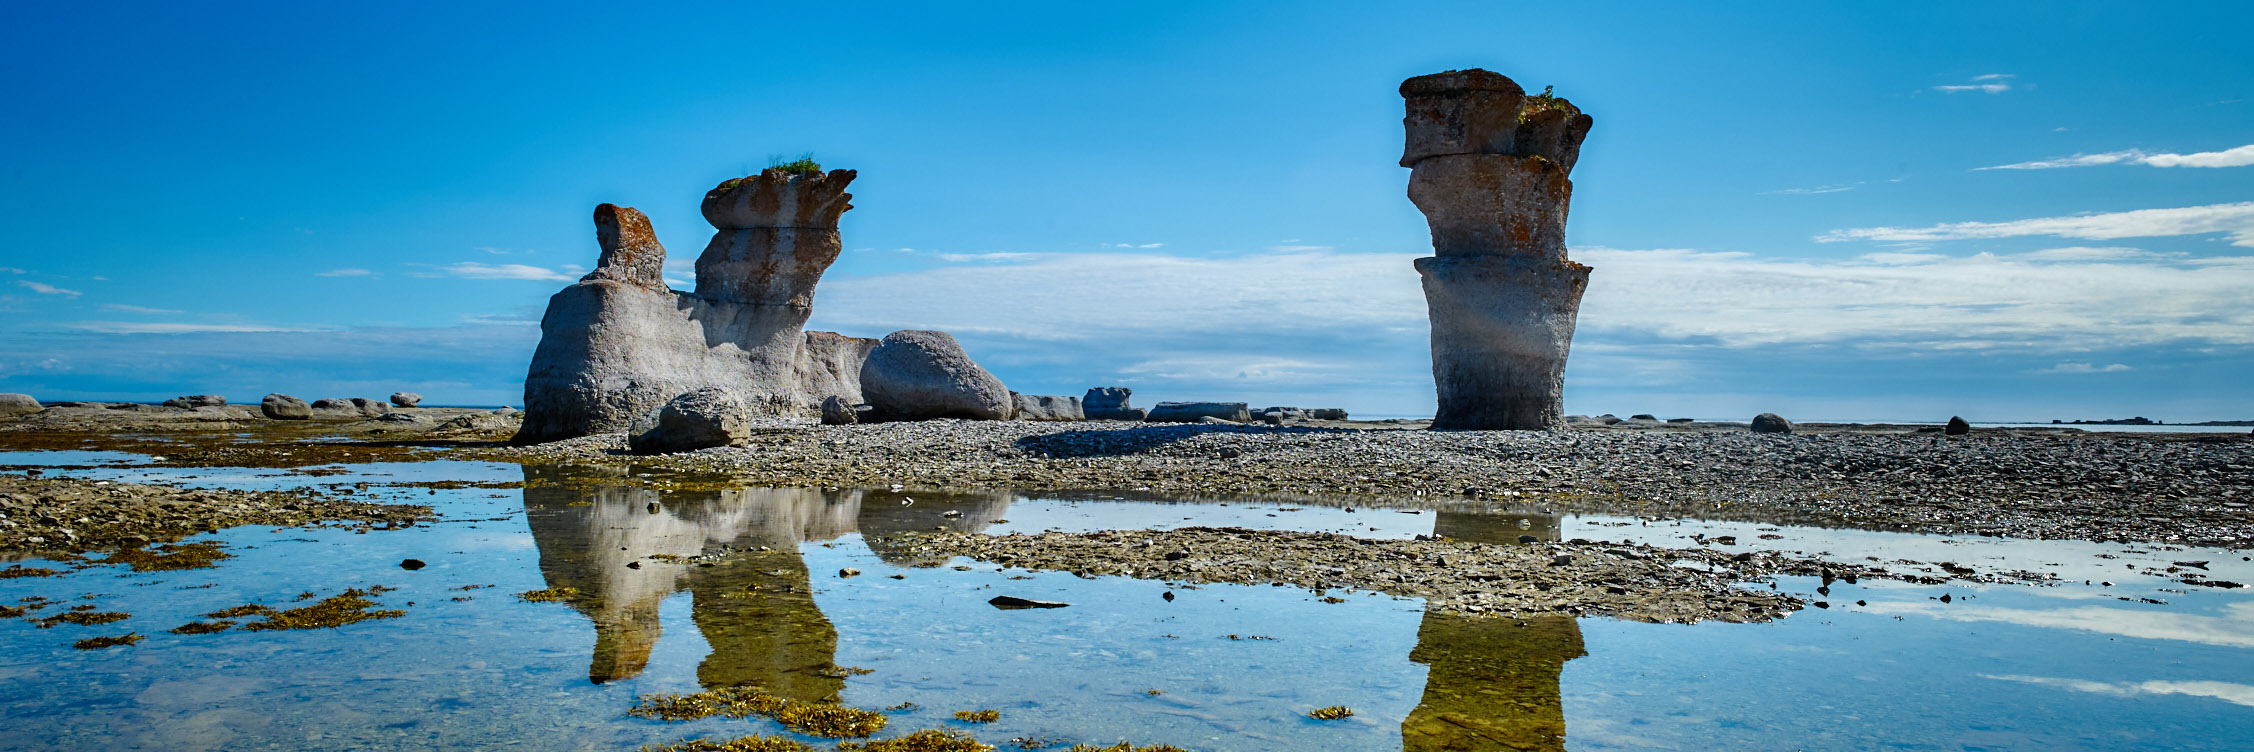 Calcium monoliths at Anse des Érosions on Île Quarry. 